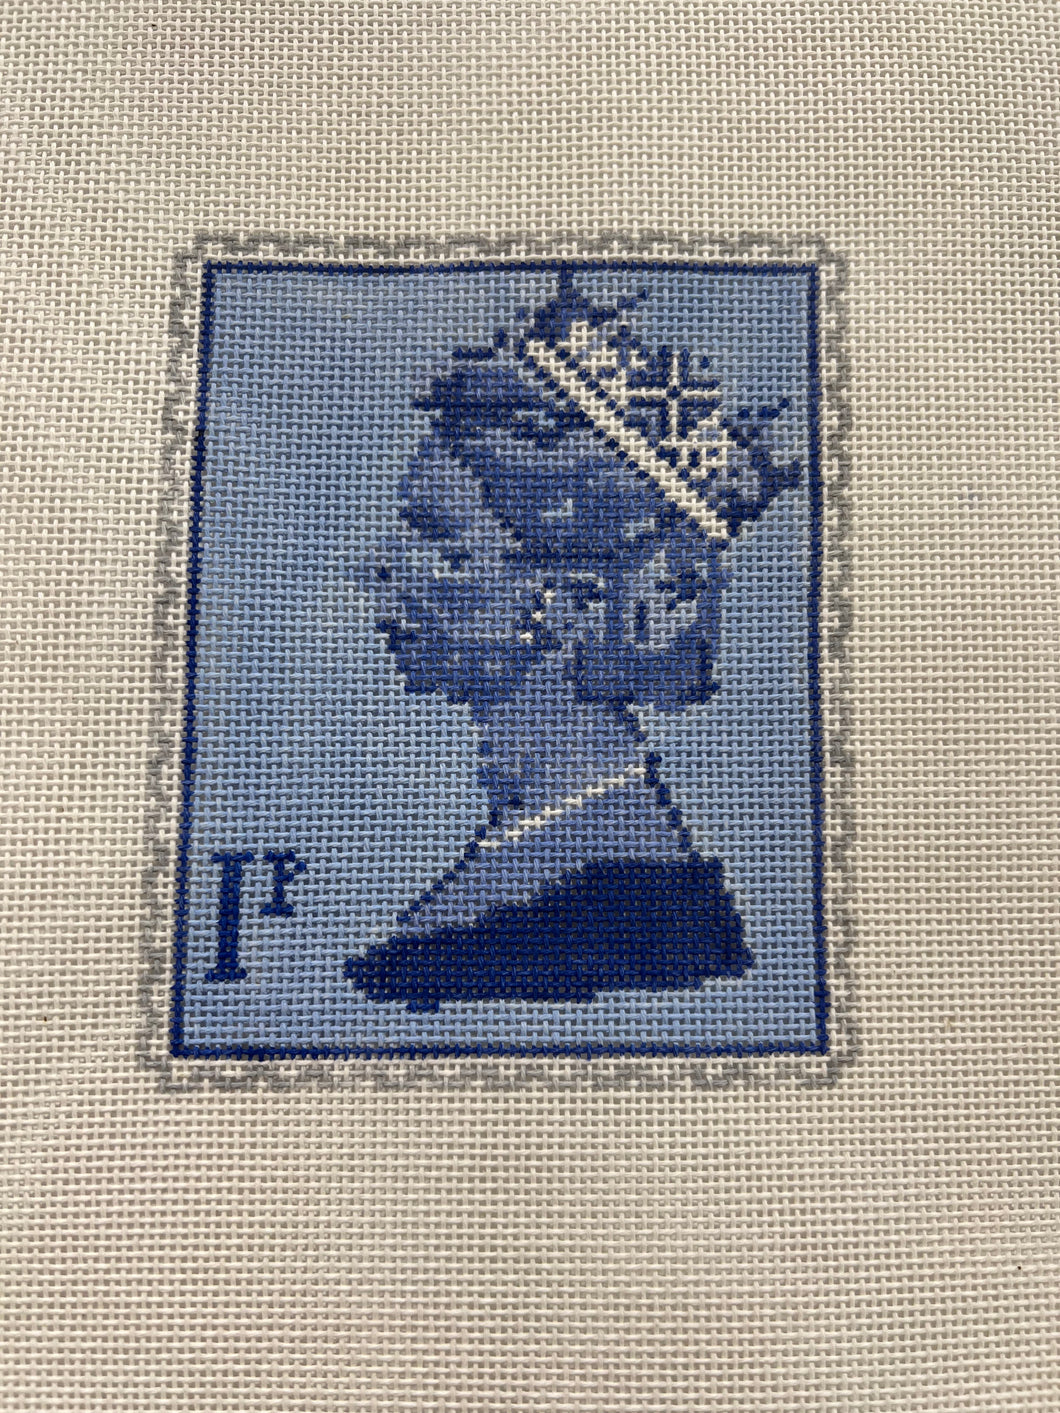 Queen Elizabeth Stamp